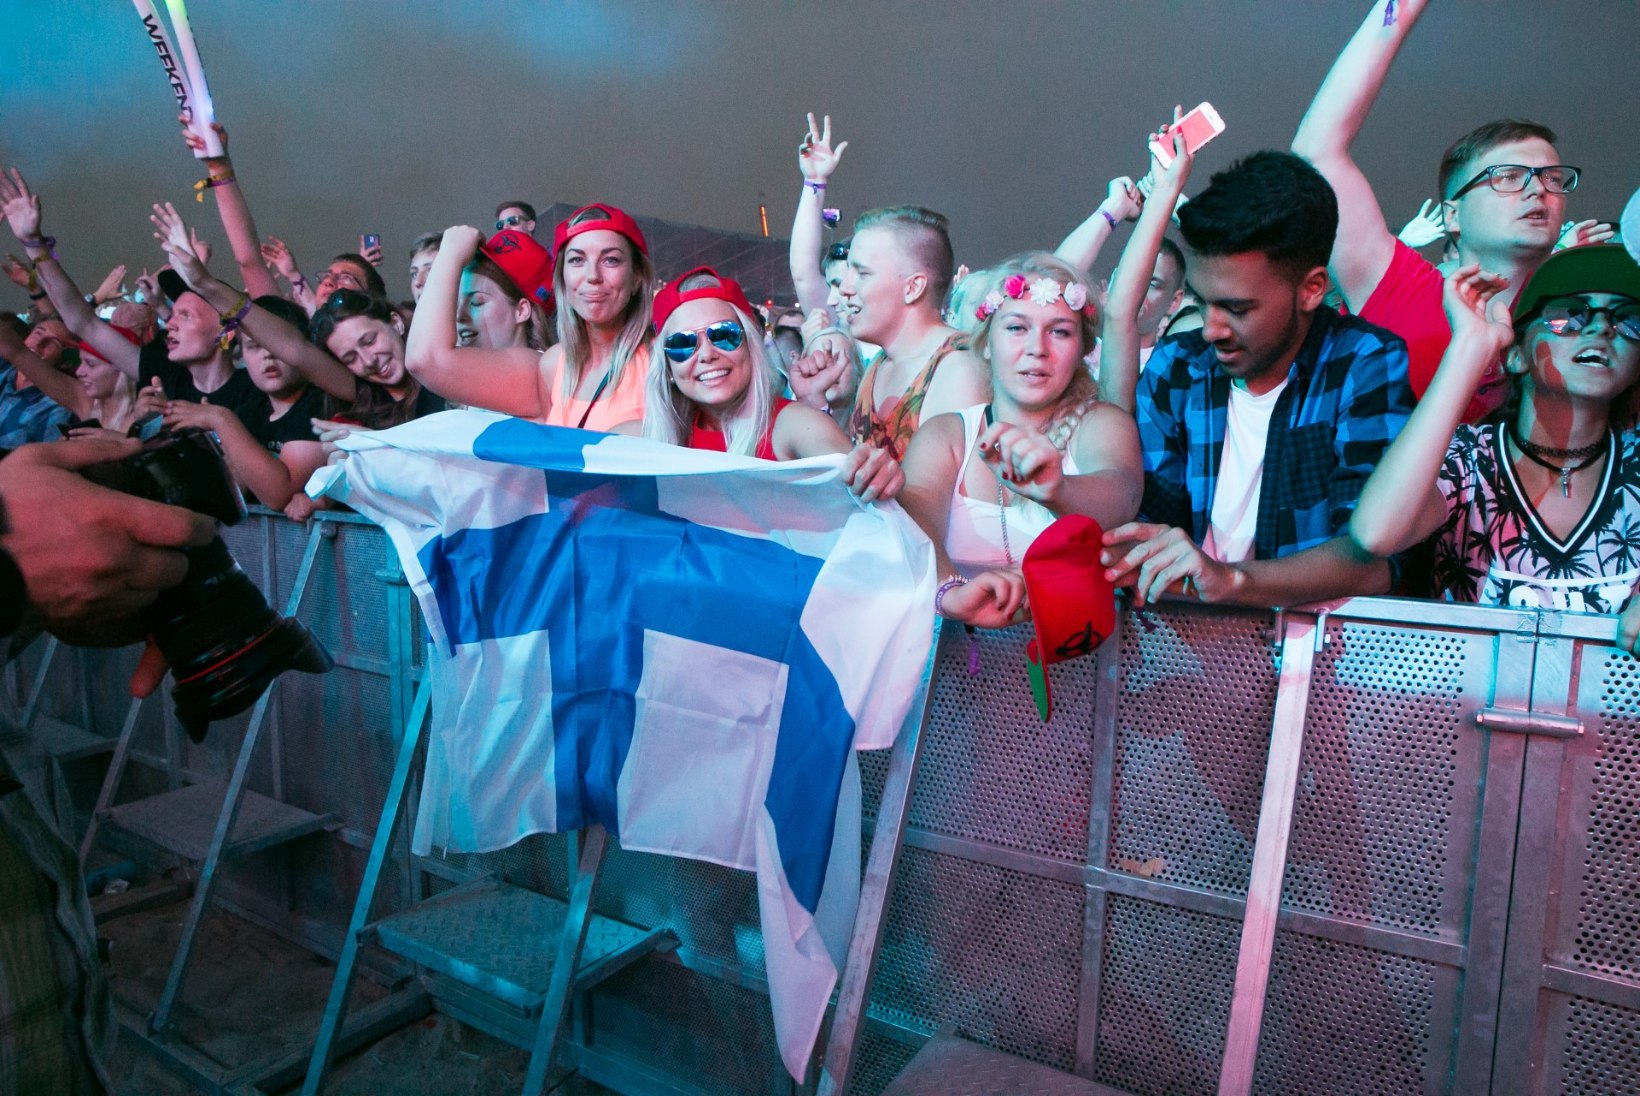 ÕHTULEHE VIDEO JA GALERII | Tiësto küttis Weekend Festivalil rahva tulikuumaks ja rohkemgi veel!